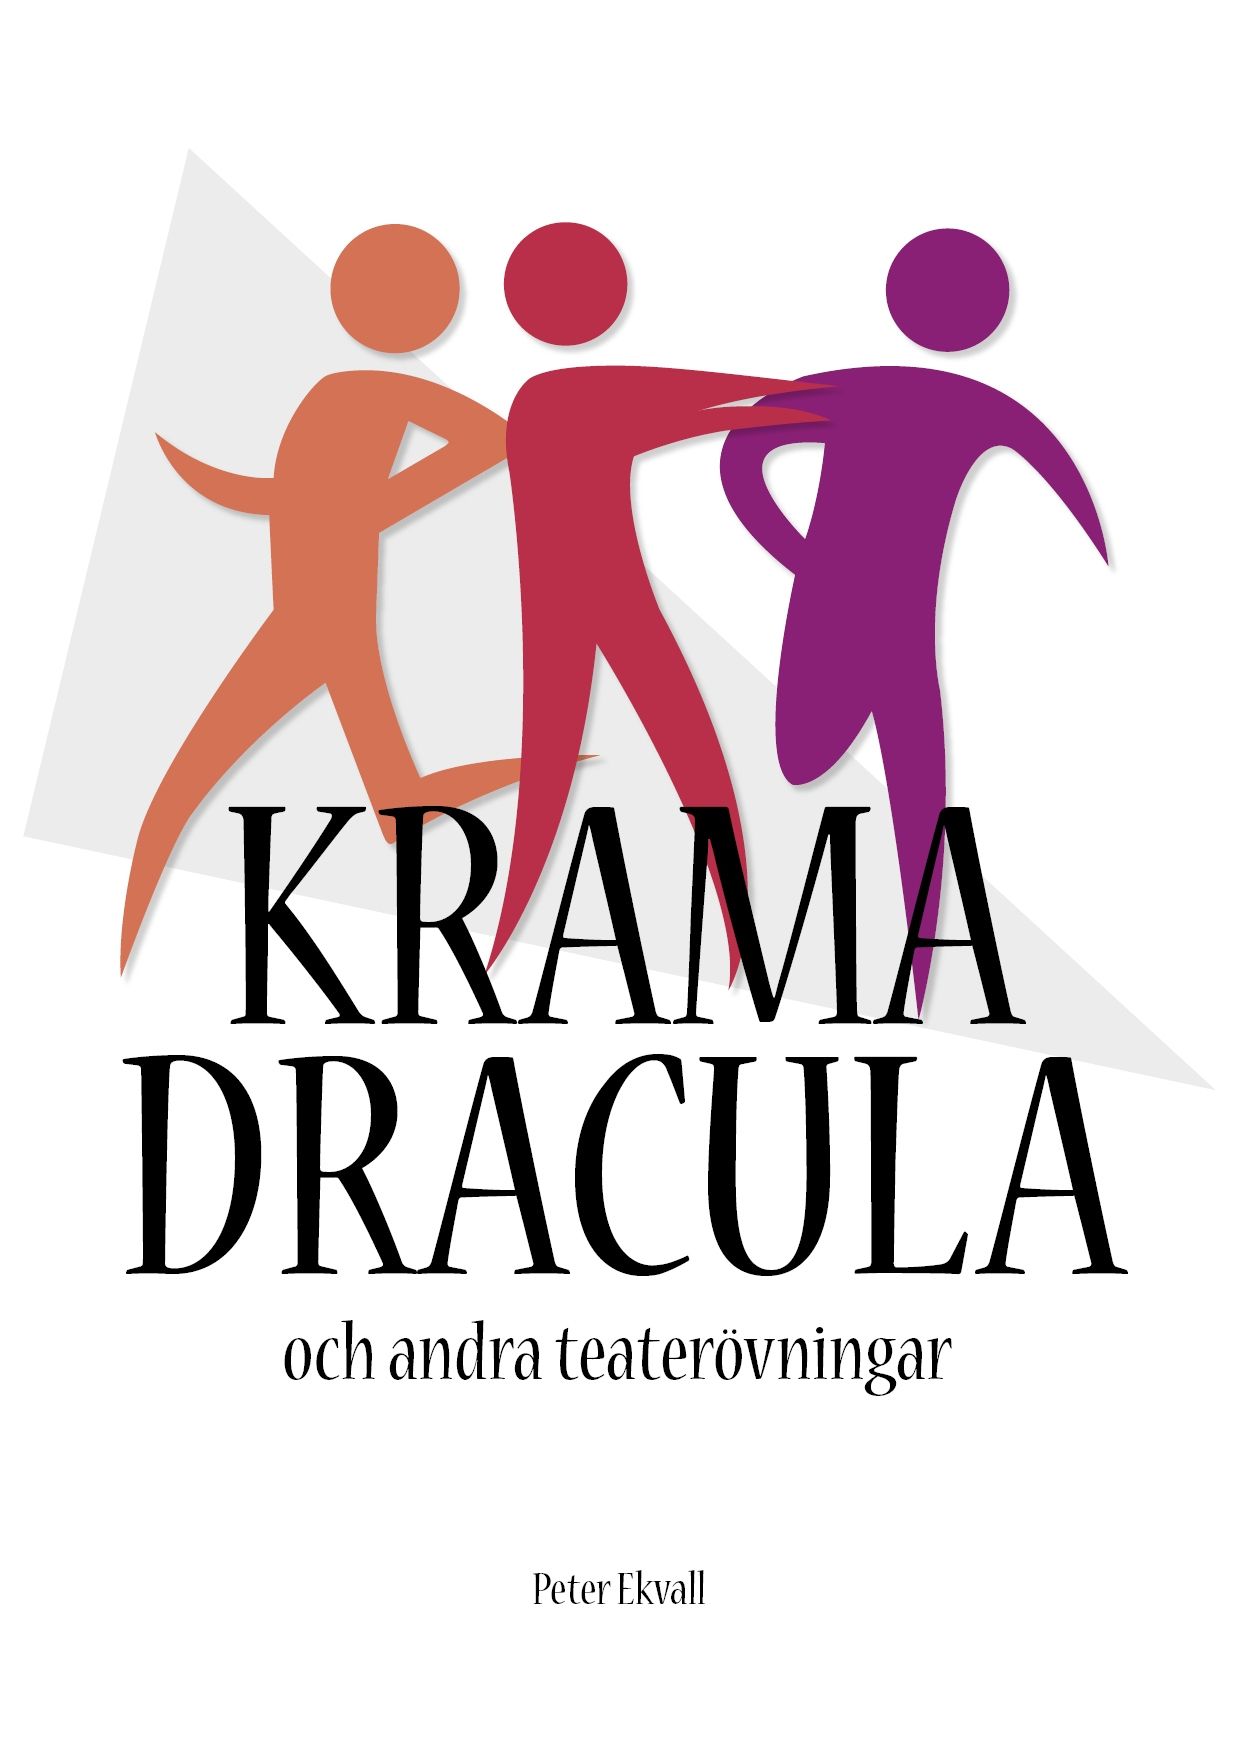 Krama Dracula och andra teaterövningar, e-bok av Peter Ekvall